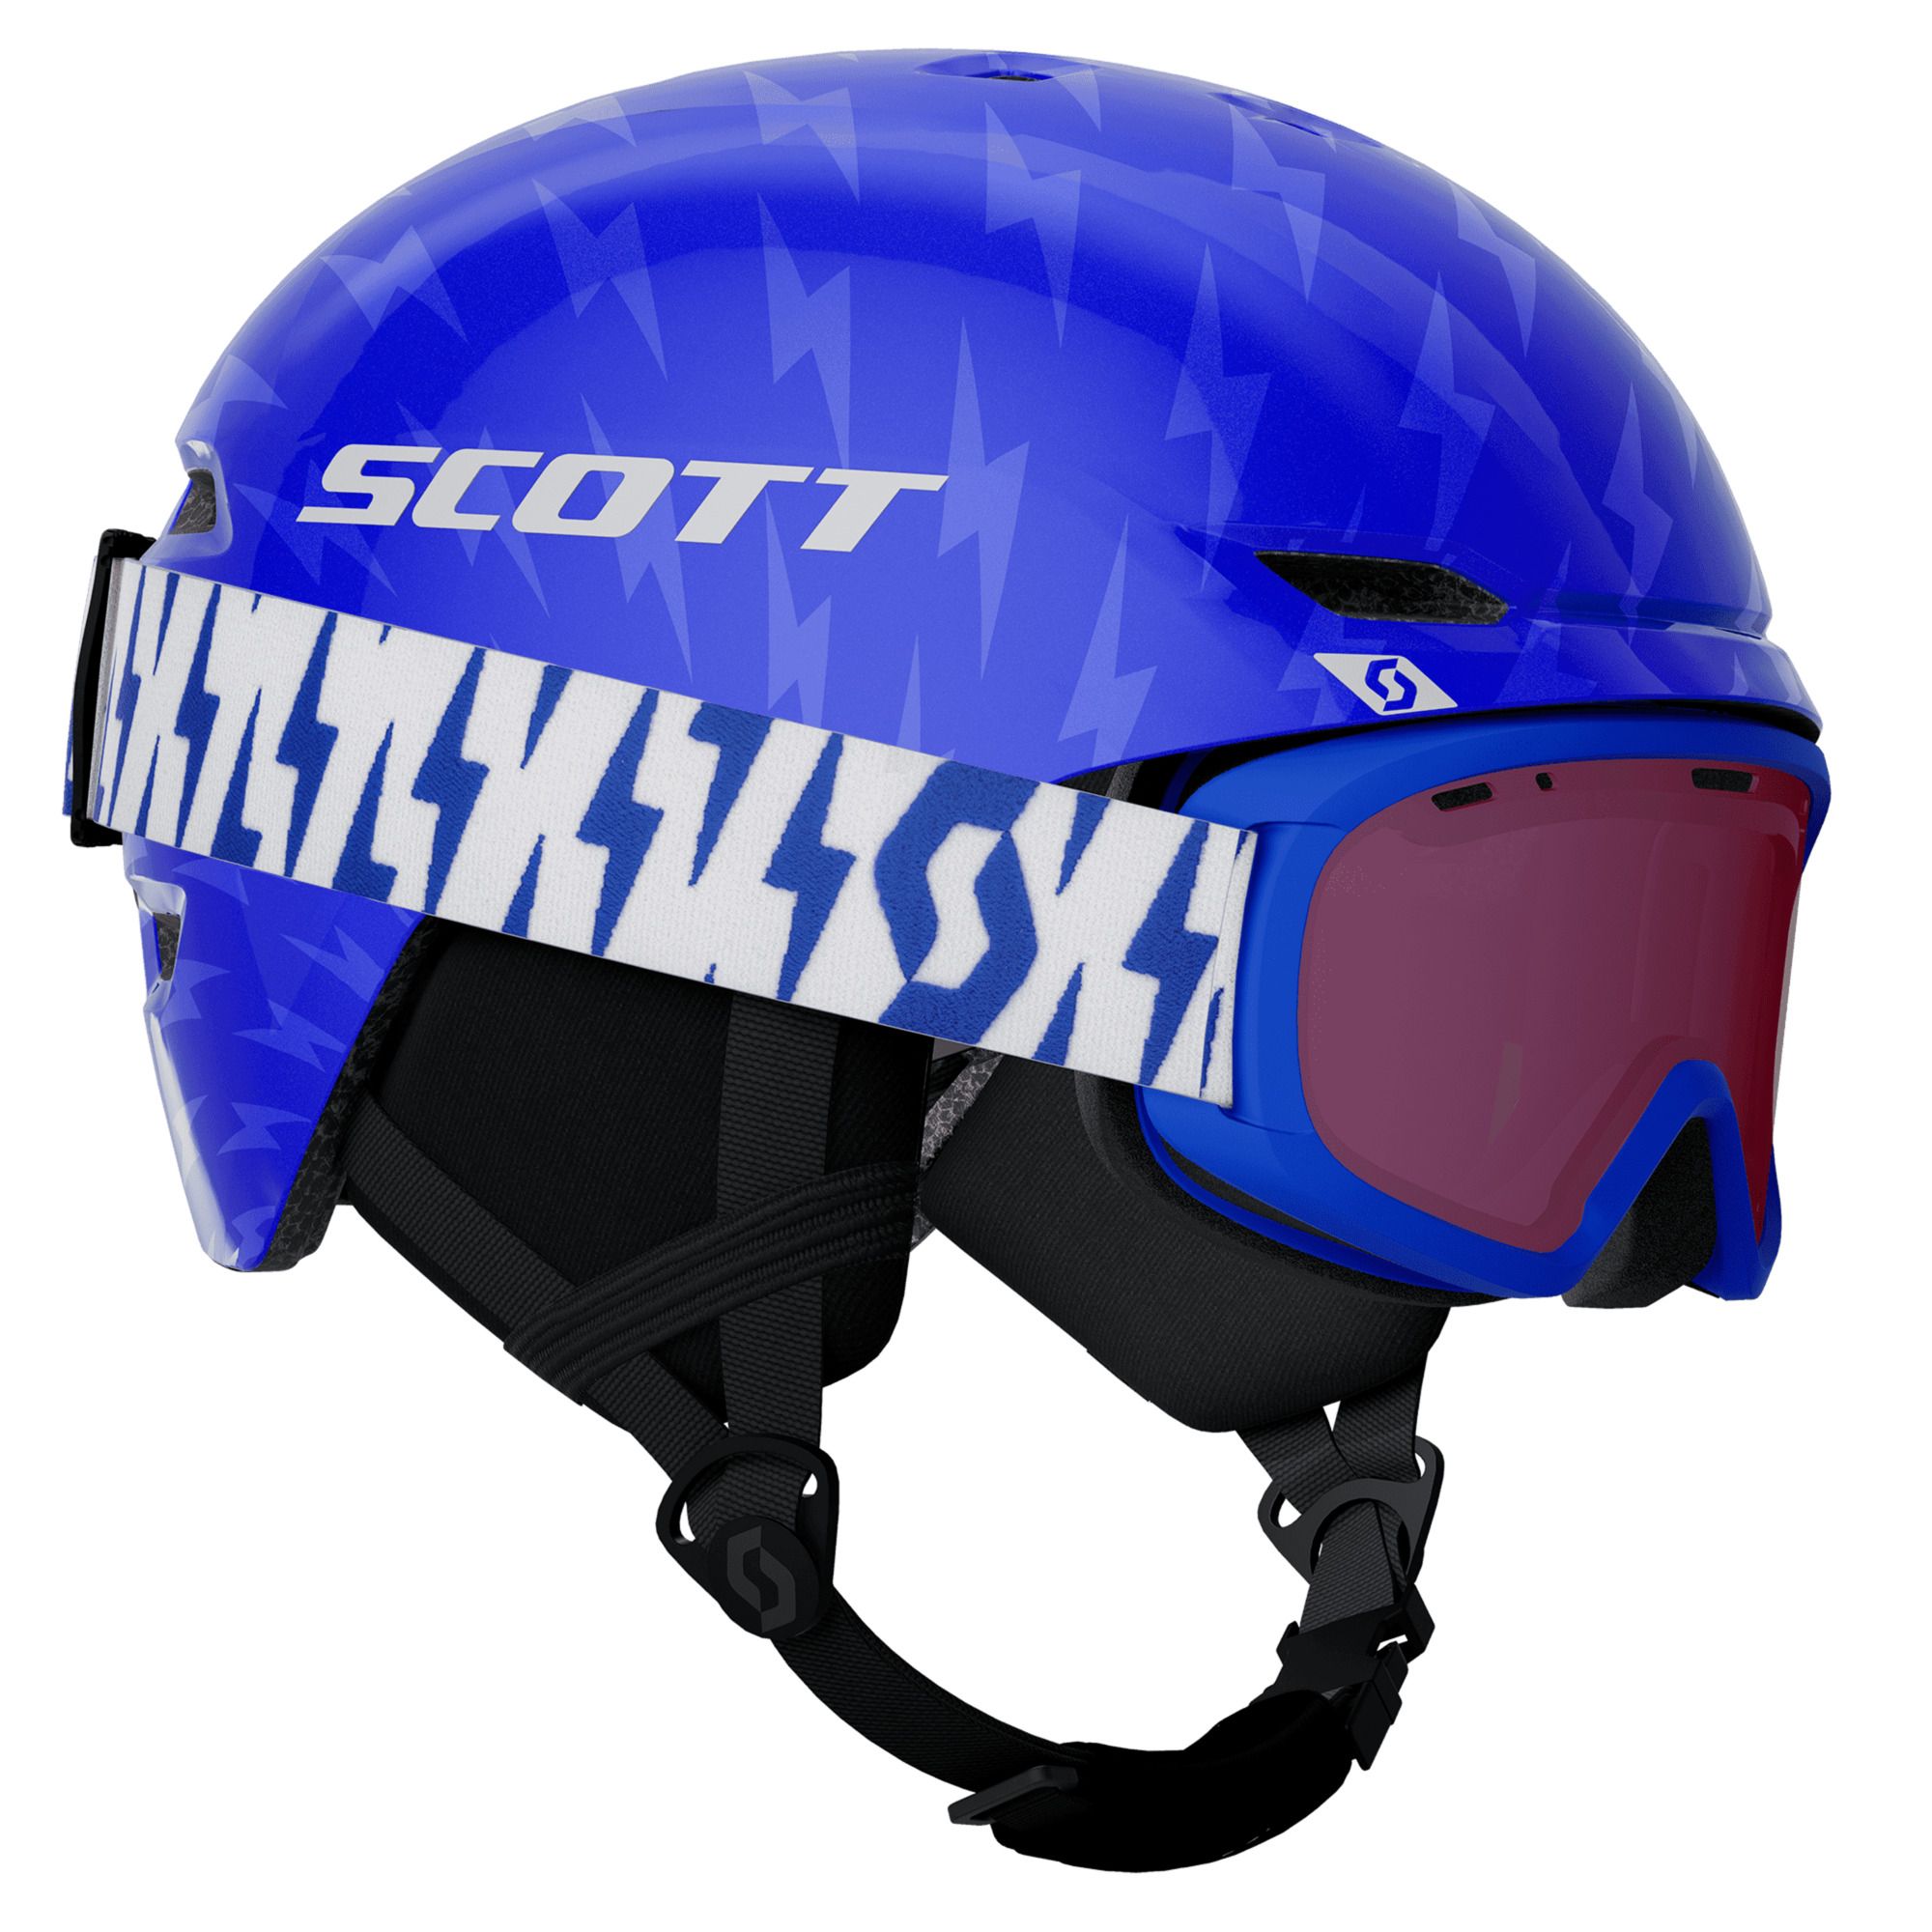 Fotografie Set casca ski si ochelari Scott Keeper 2+ Jr Witty, copii, marime S(51-54cm), albastru